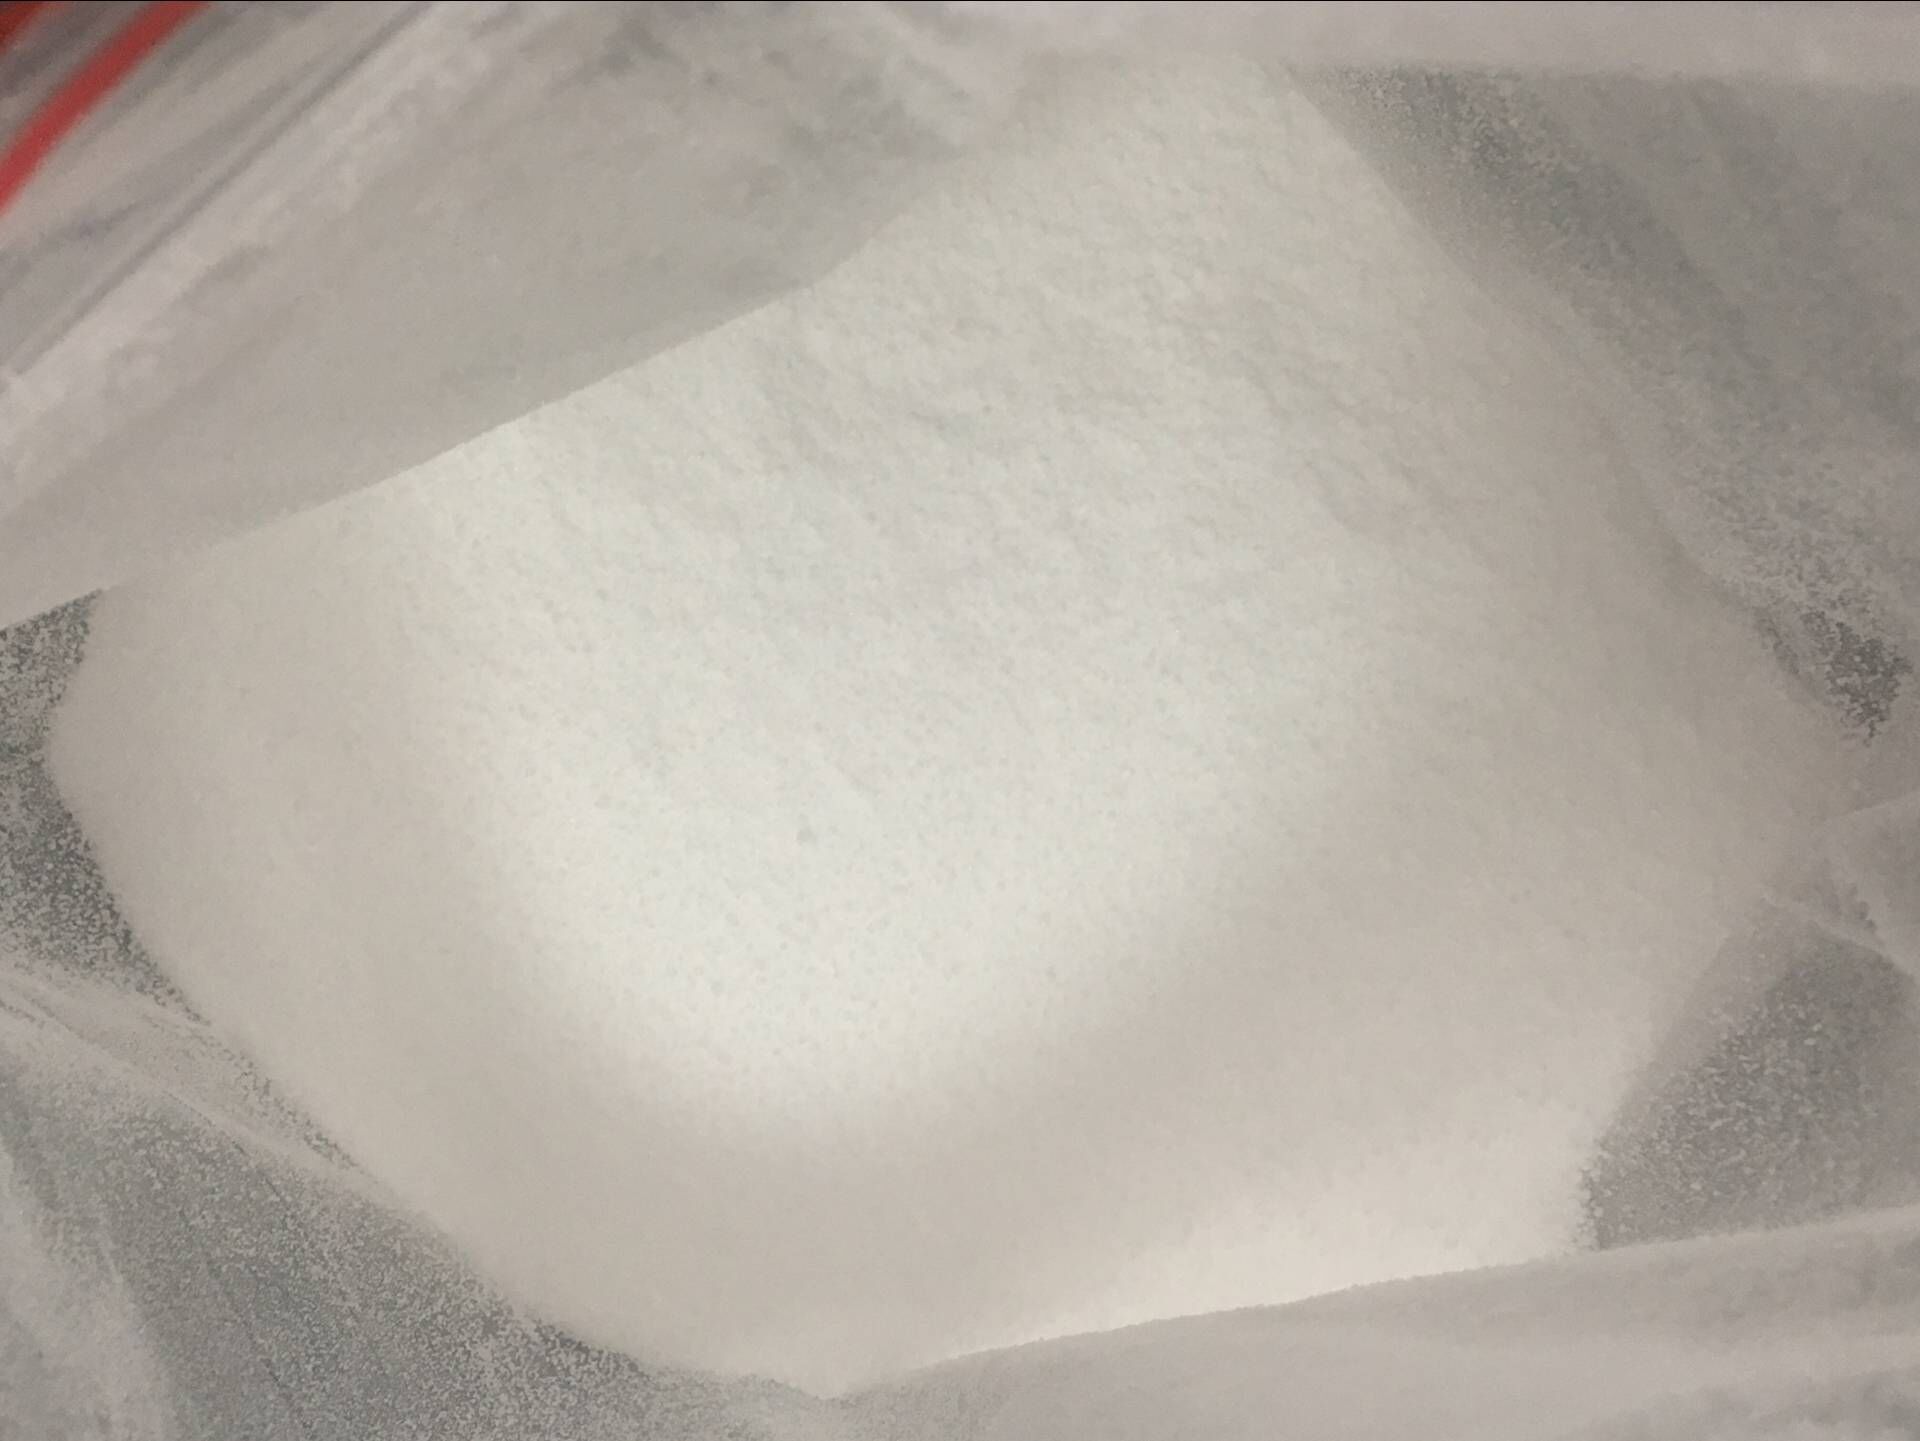 蒽醌-2-磺酸钠,Anthraquinone-2-sulfonic acid, sodium salt, monohydrate